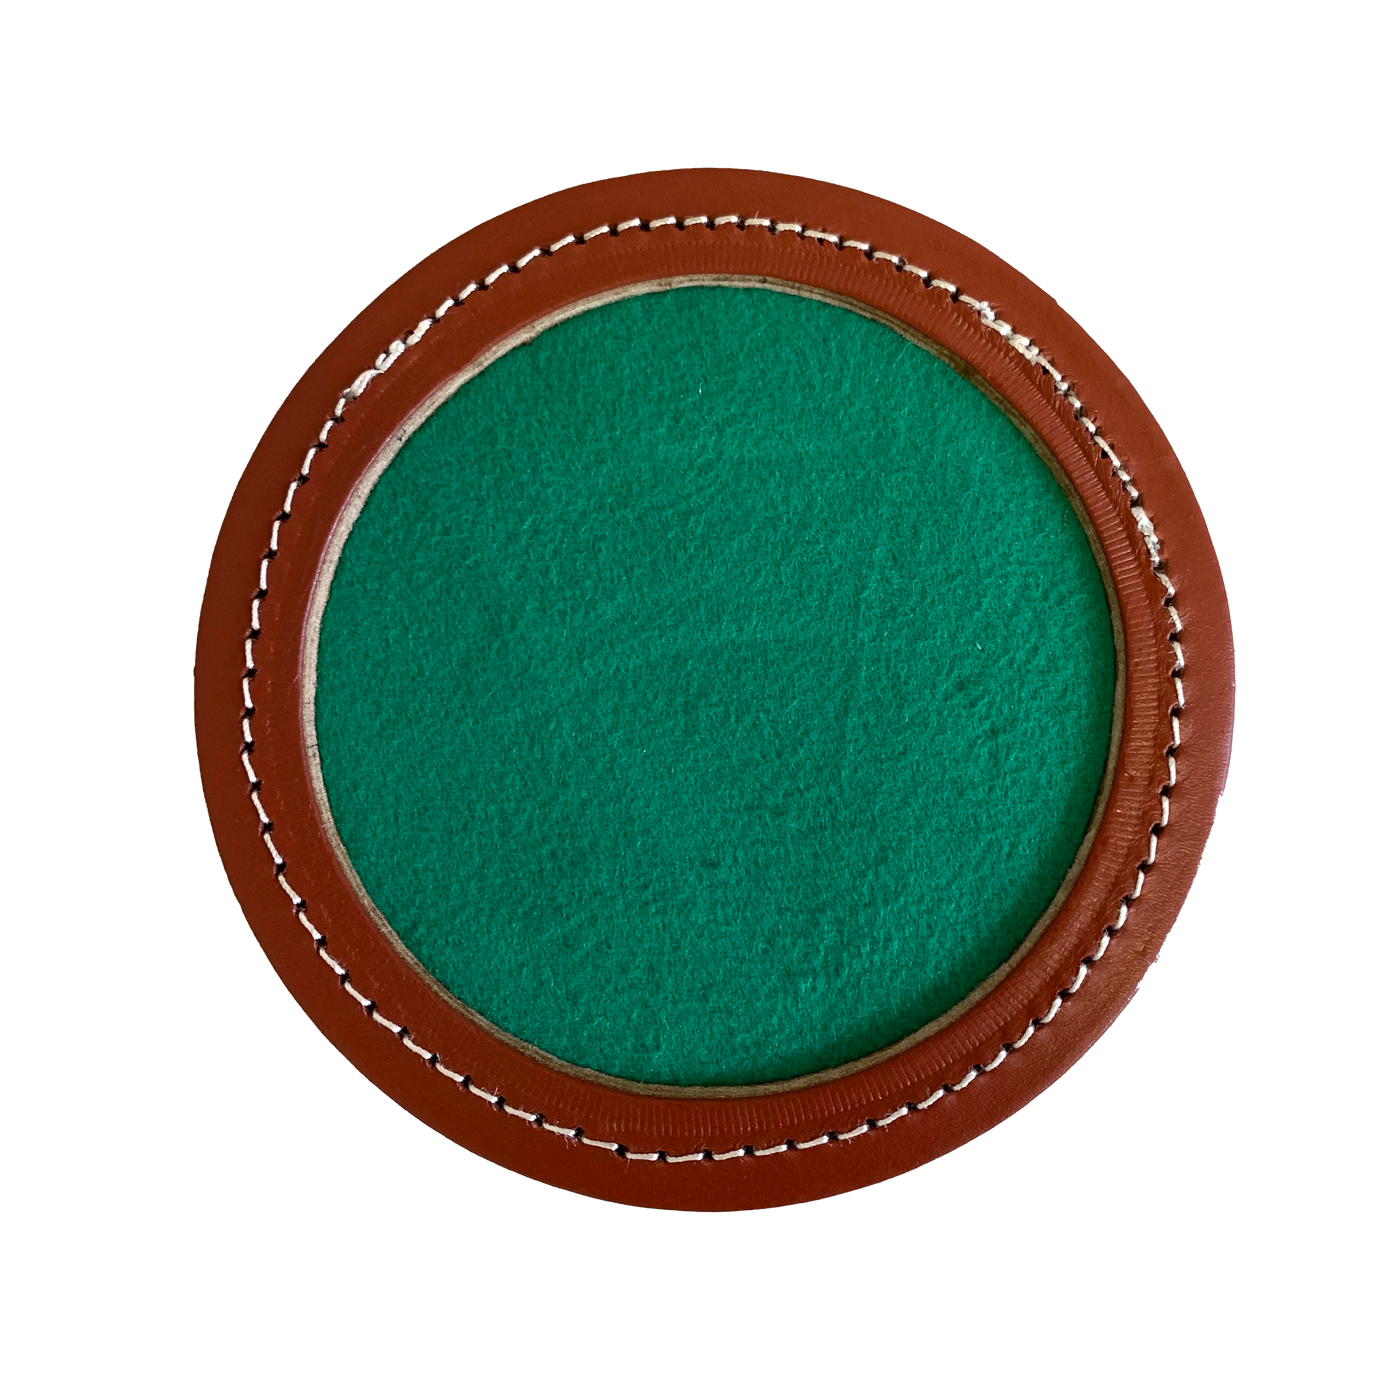 Stor raflebakke i brunt læder/grøn filt